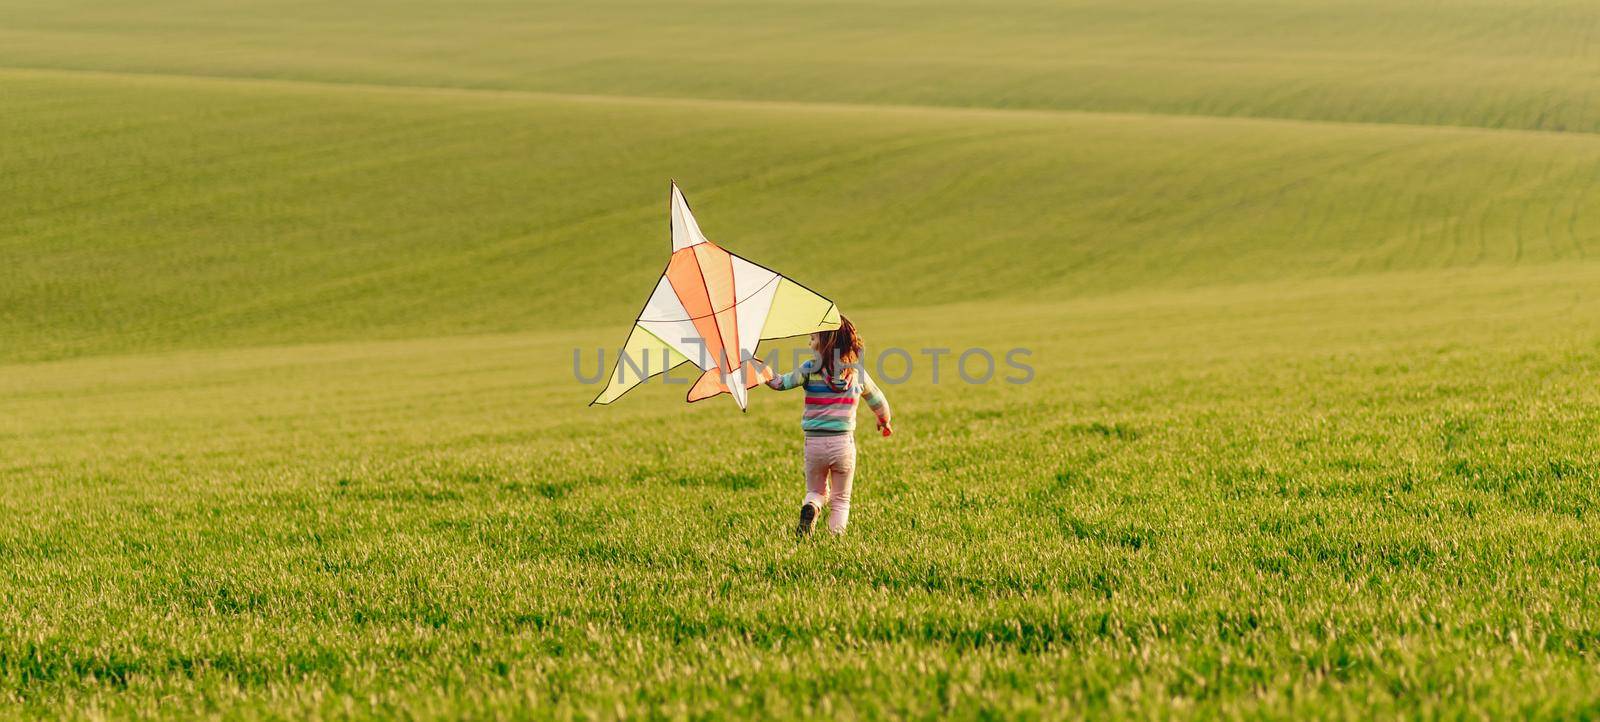 Little girl holding kite at sunset by tan4ikk1